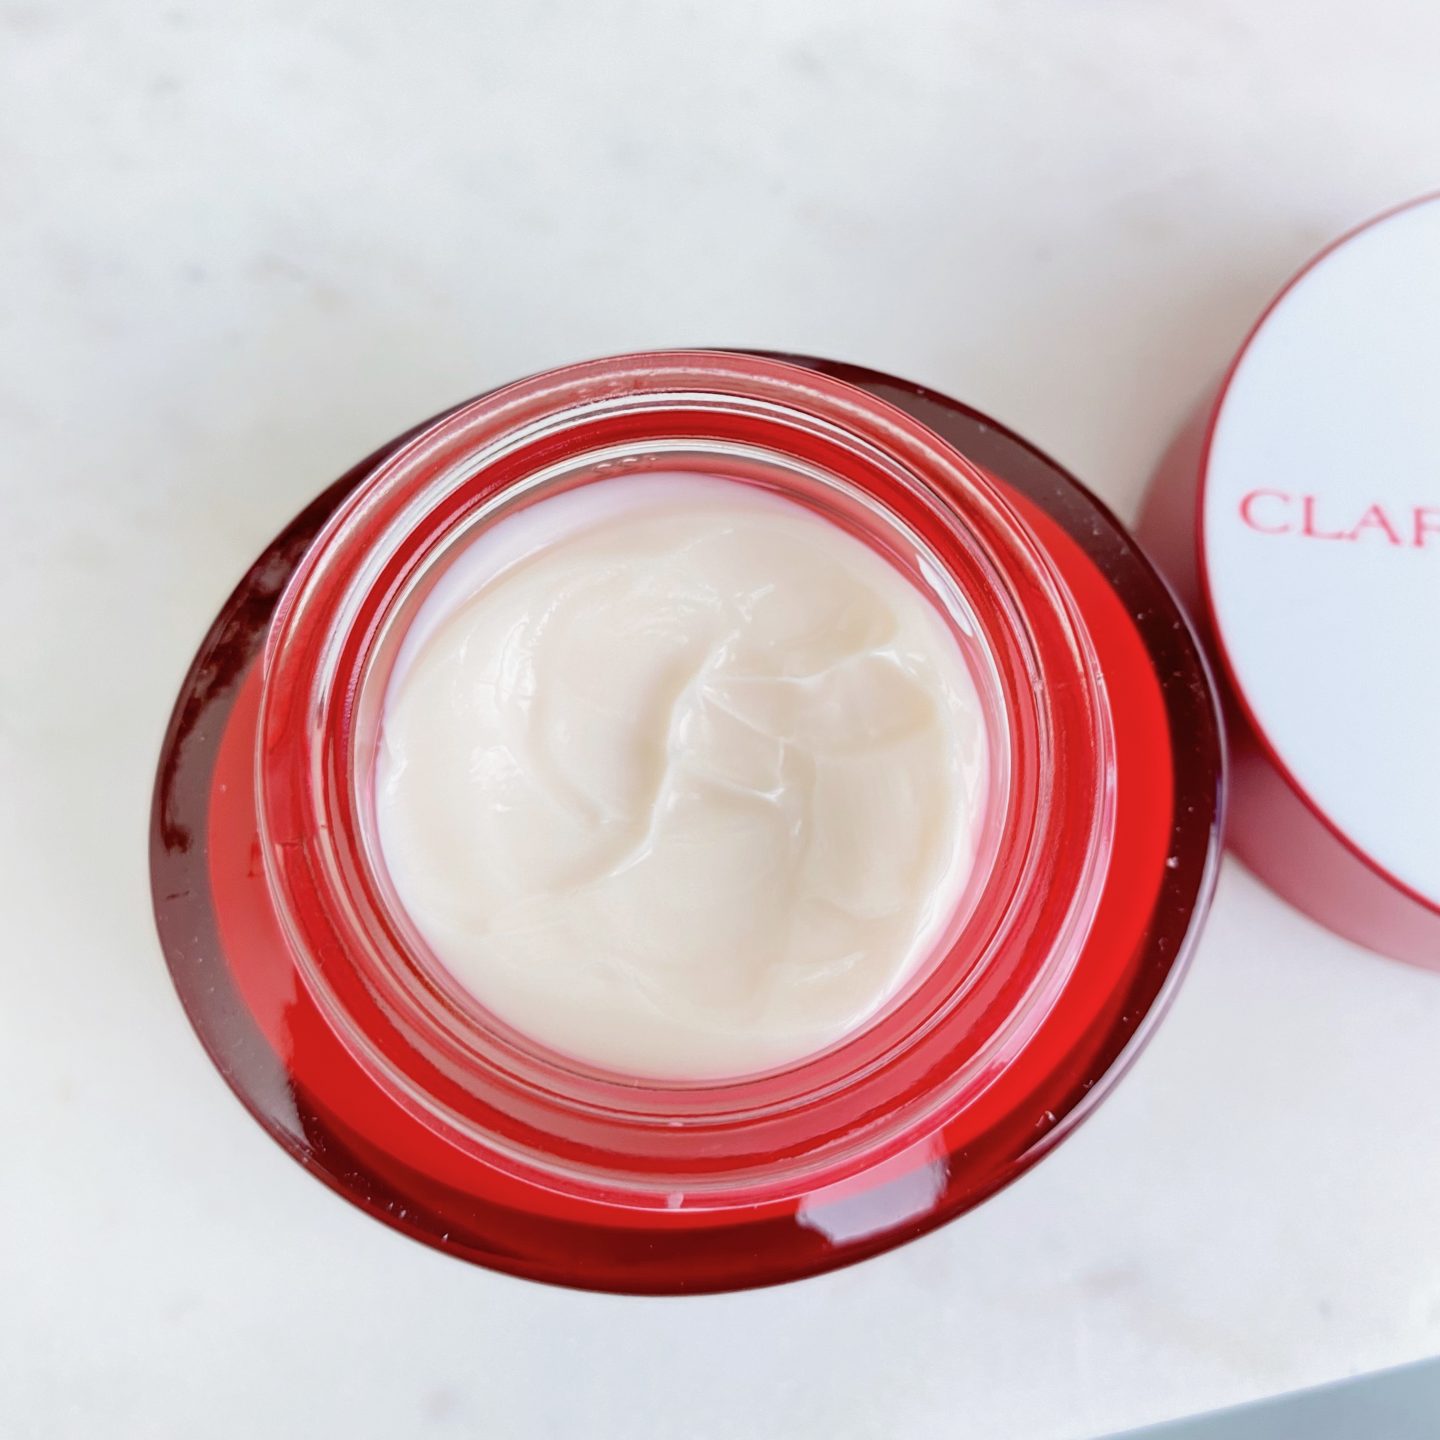 CLARINS Super Restorative Day Cream - All Skin Types